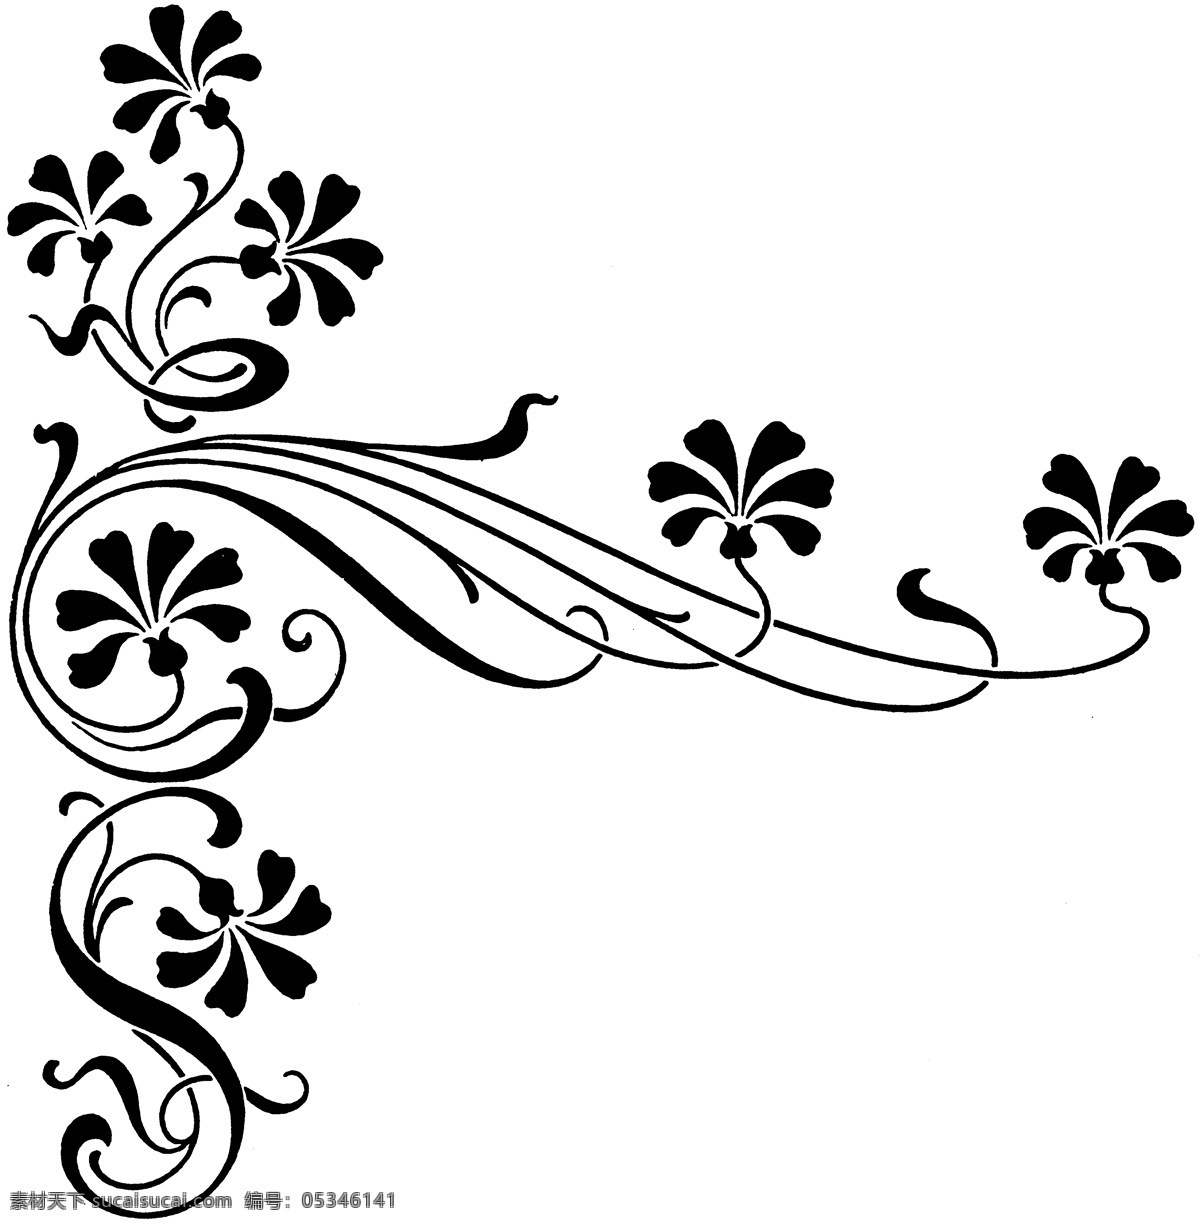 花草花纹 古典纹饰 欧式 图案 欧式图案 设计素材 装饰图案 书画美术 白色